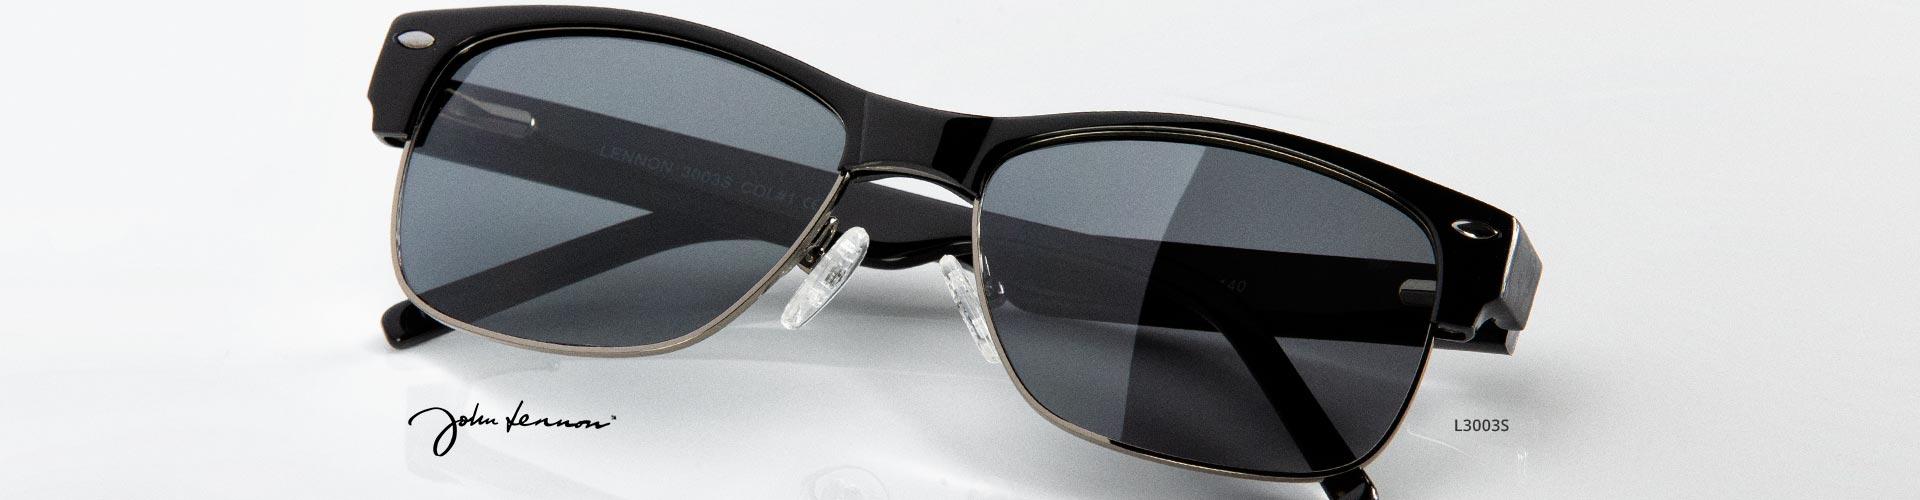 John Lennon® Sunglasses | FramesDirect